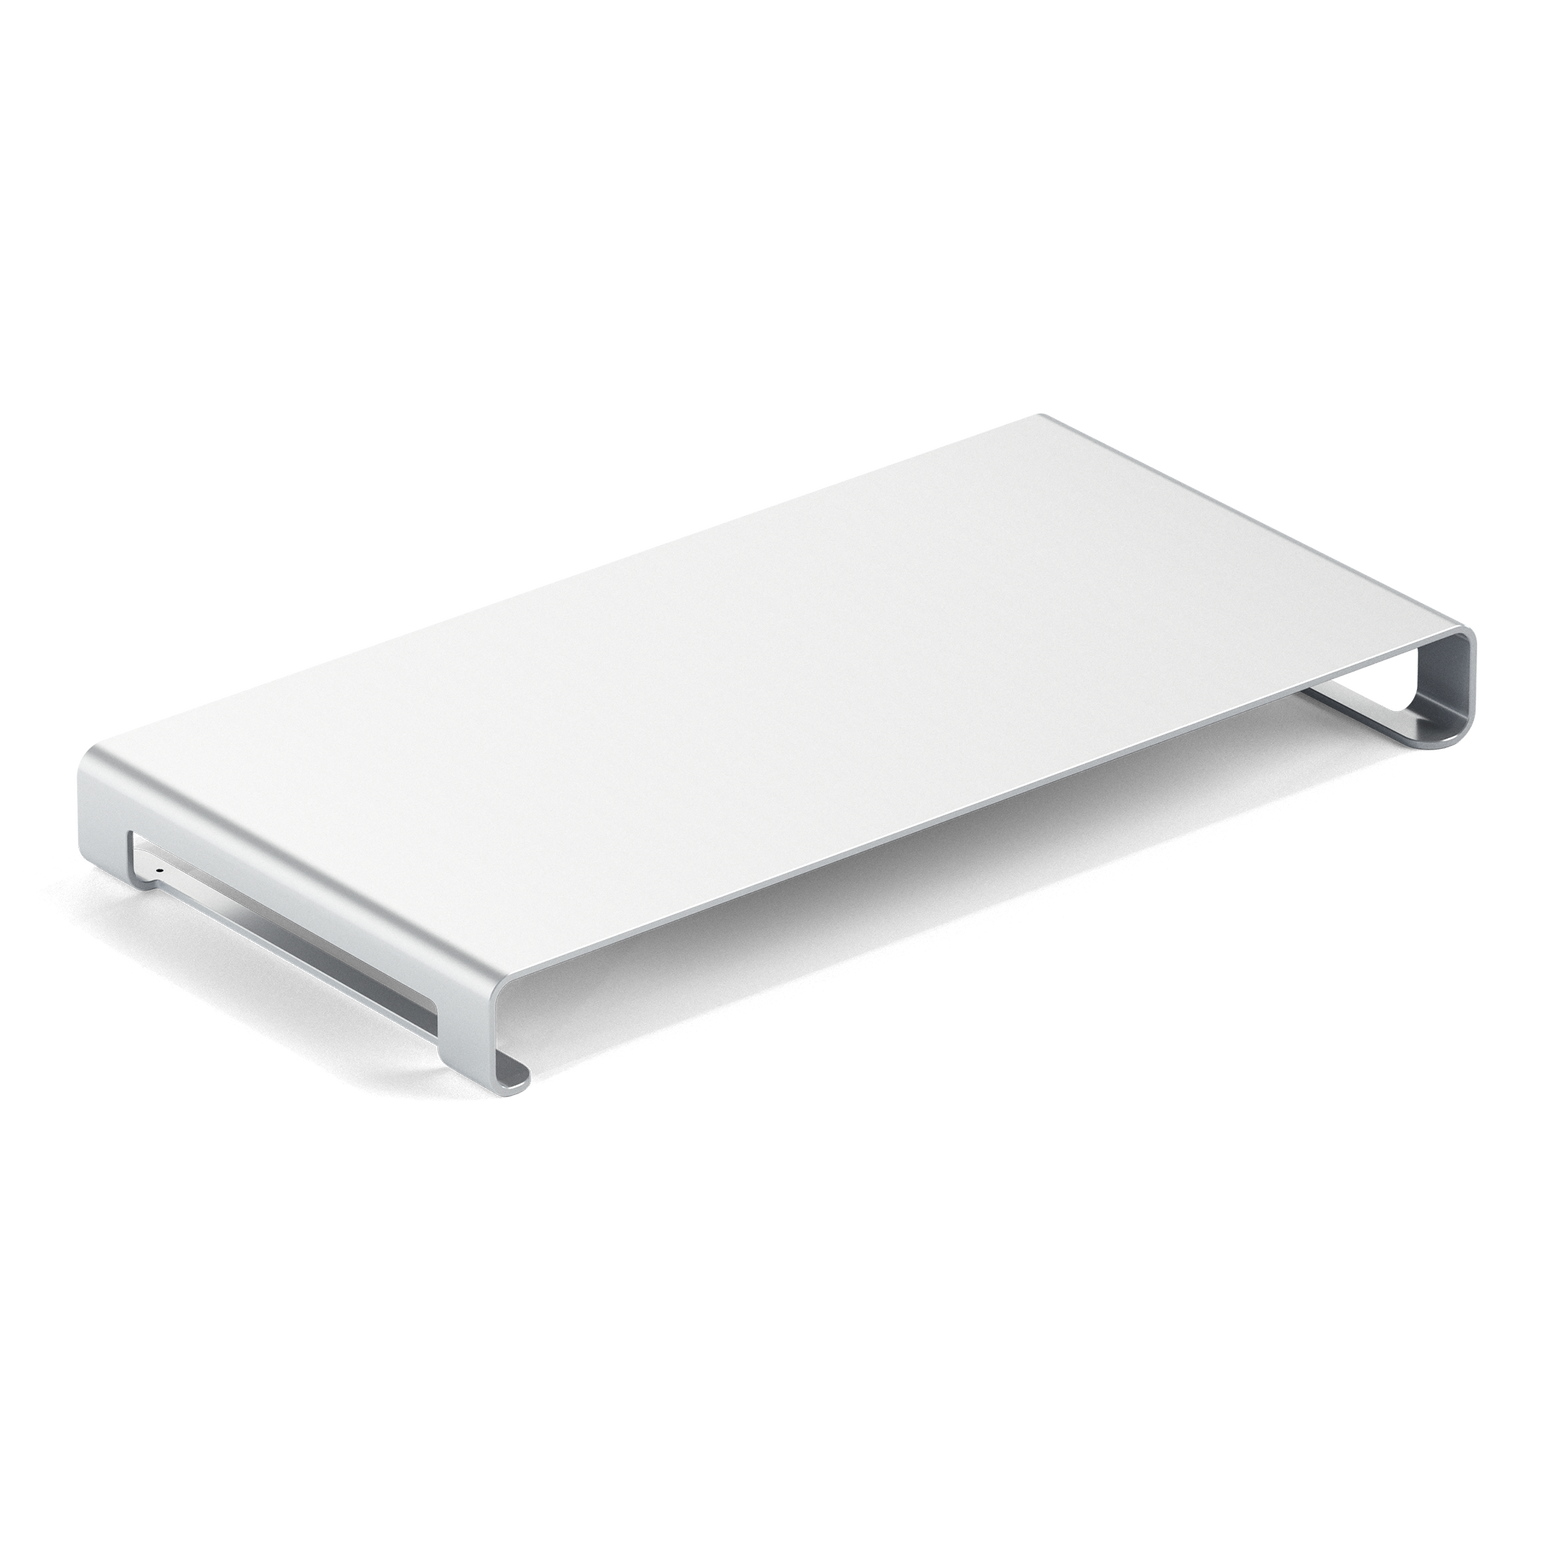 Satechi Slim Aluminium Monitor Stand - Silver